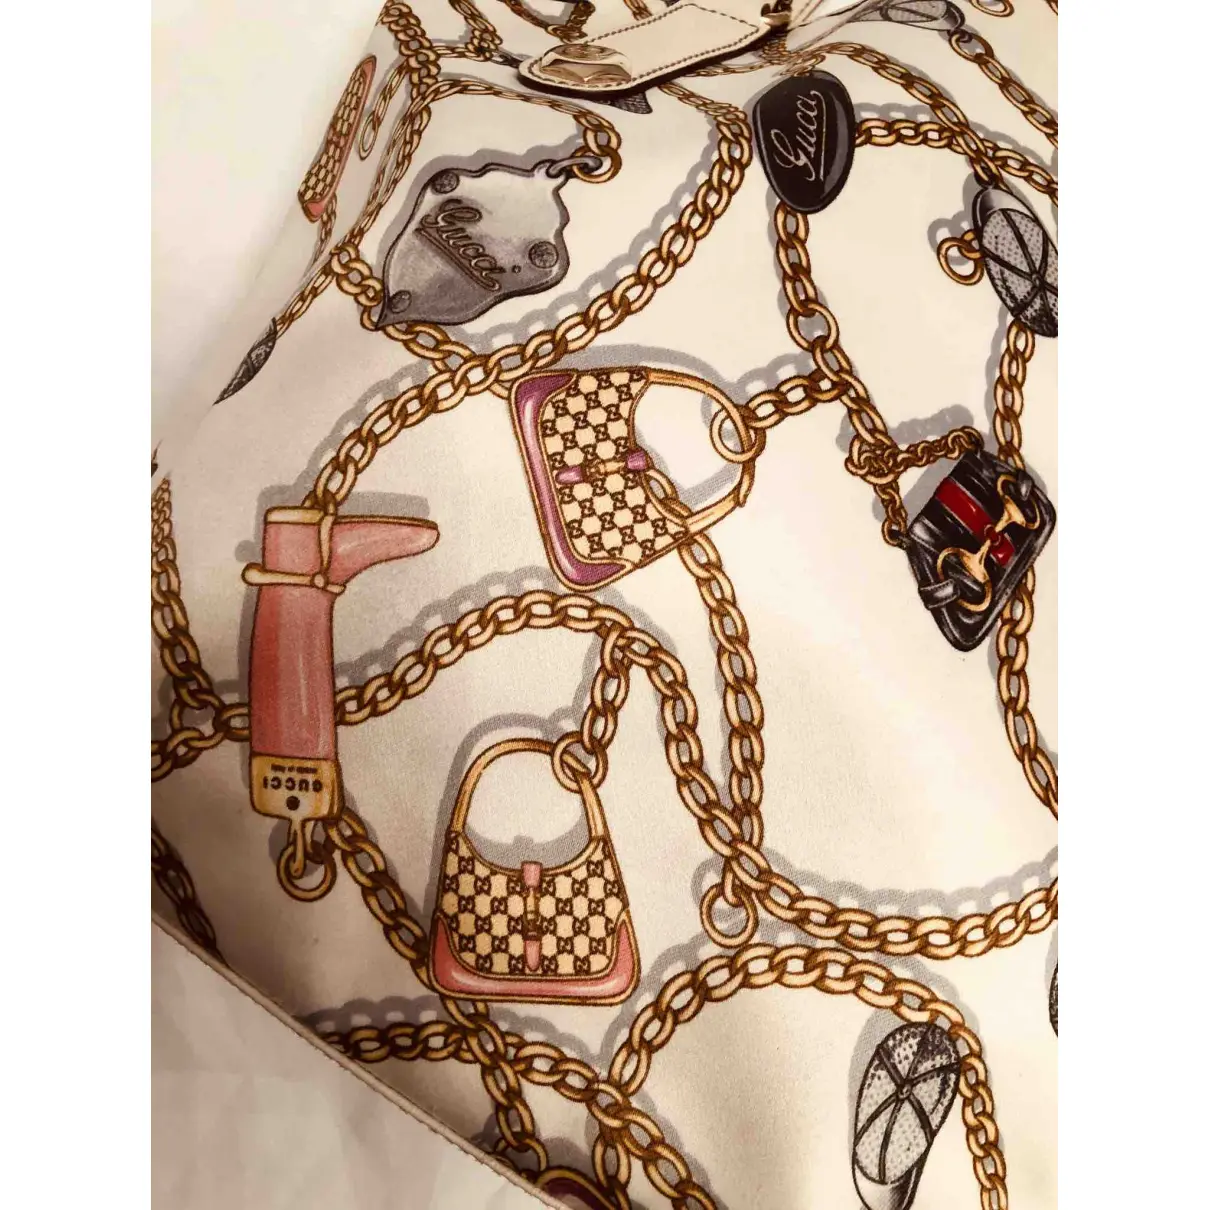 Silk handbag Gucci